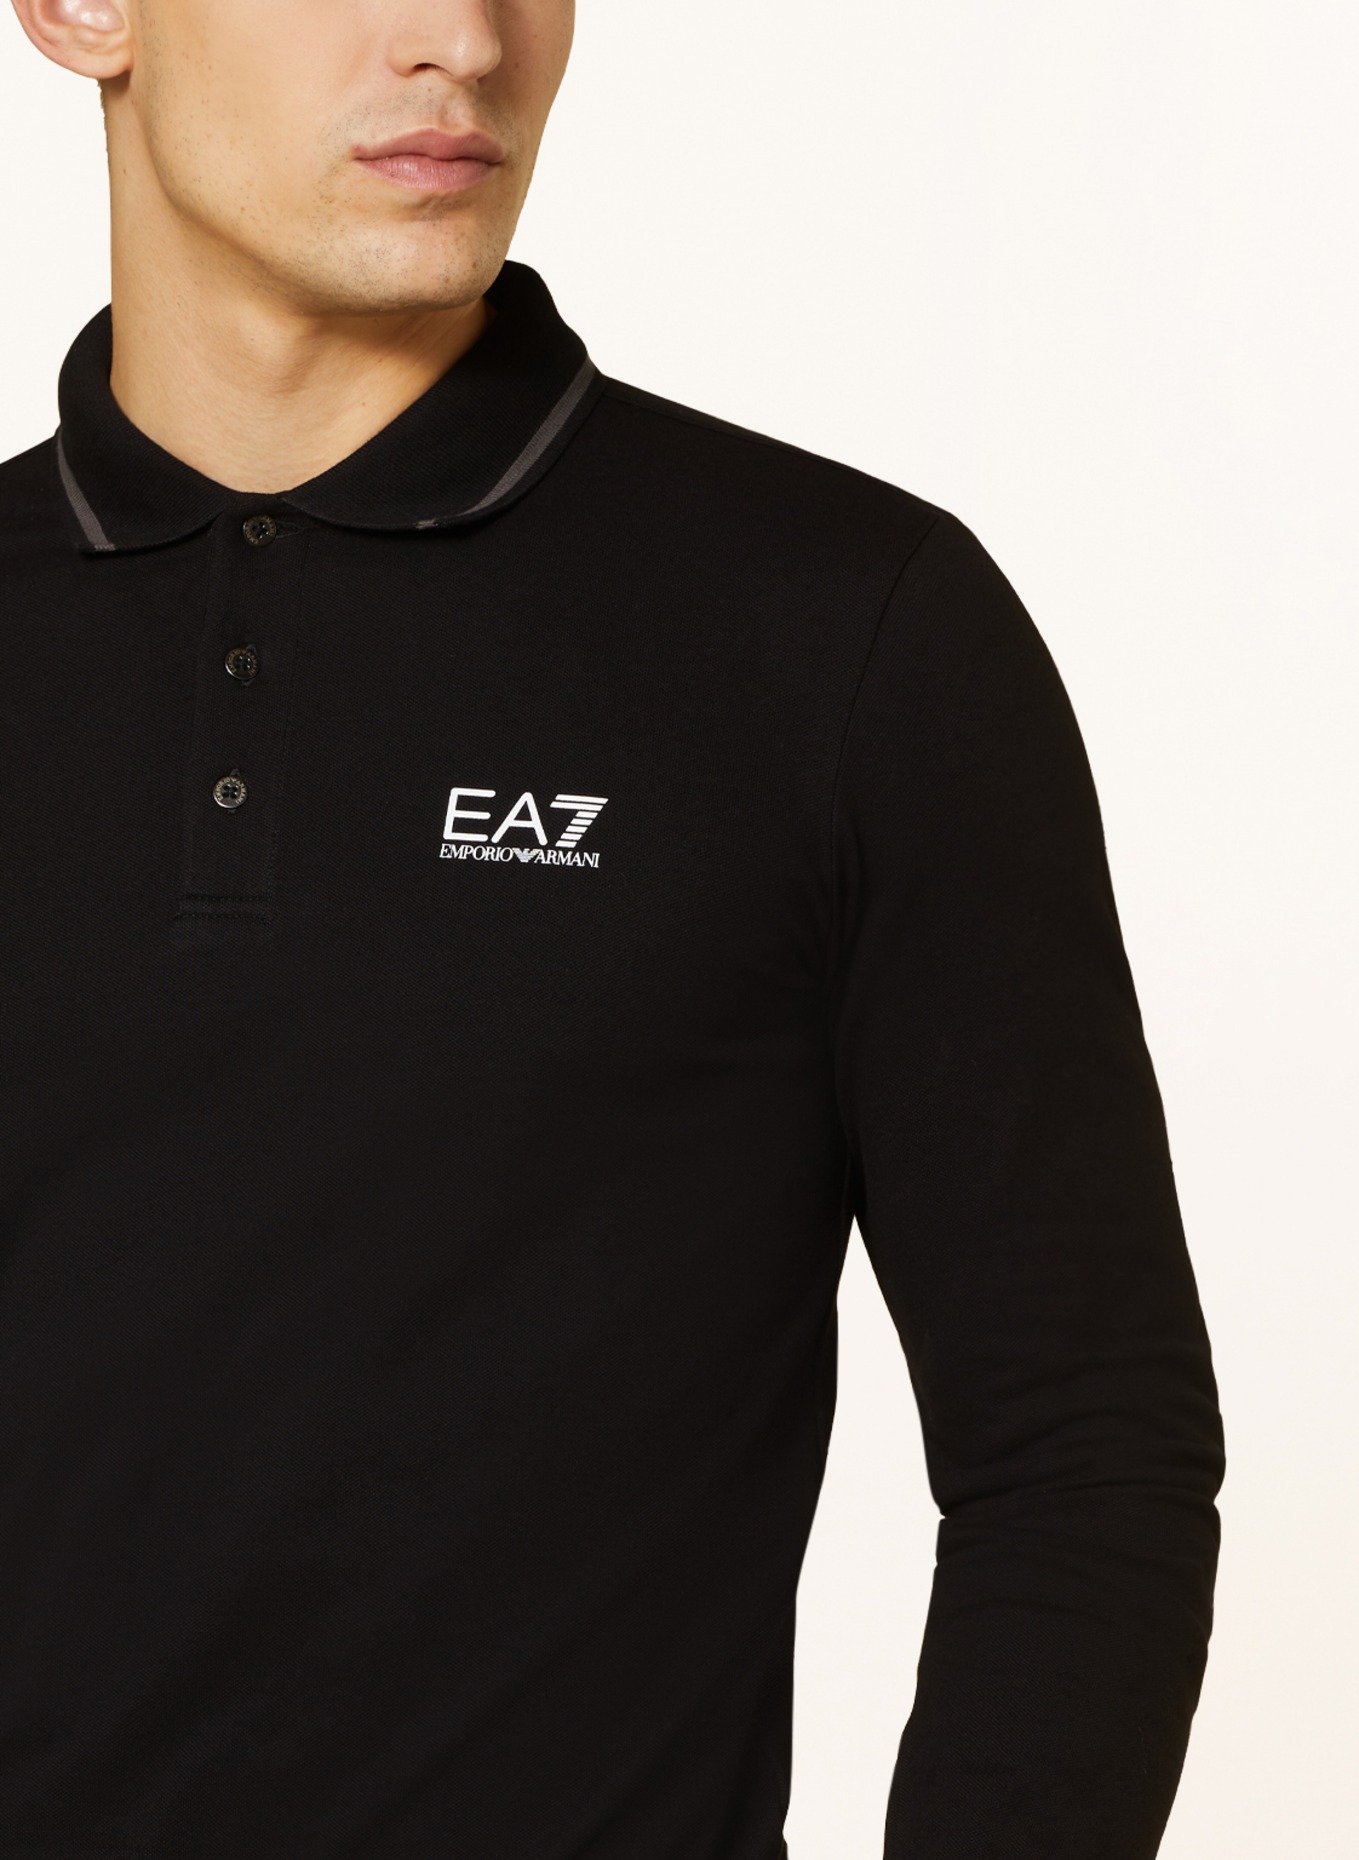 EA7 EMPORIO ARMANI Piqué polo shirt, Color: BLACK (Image 4)